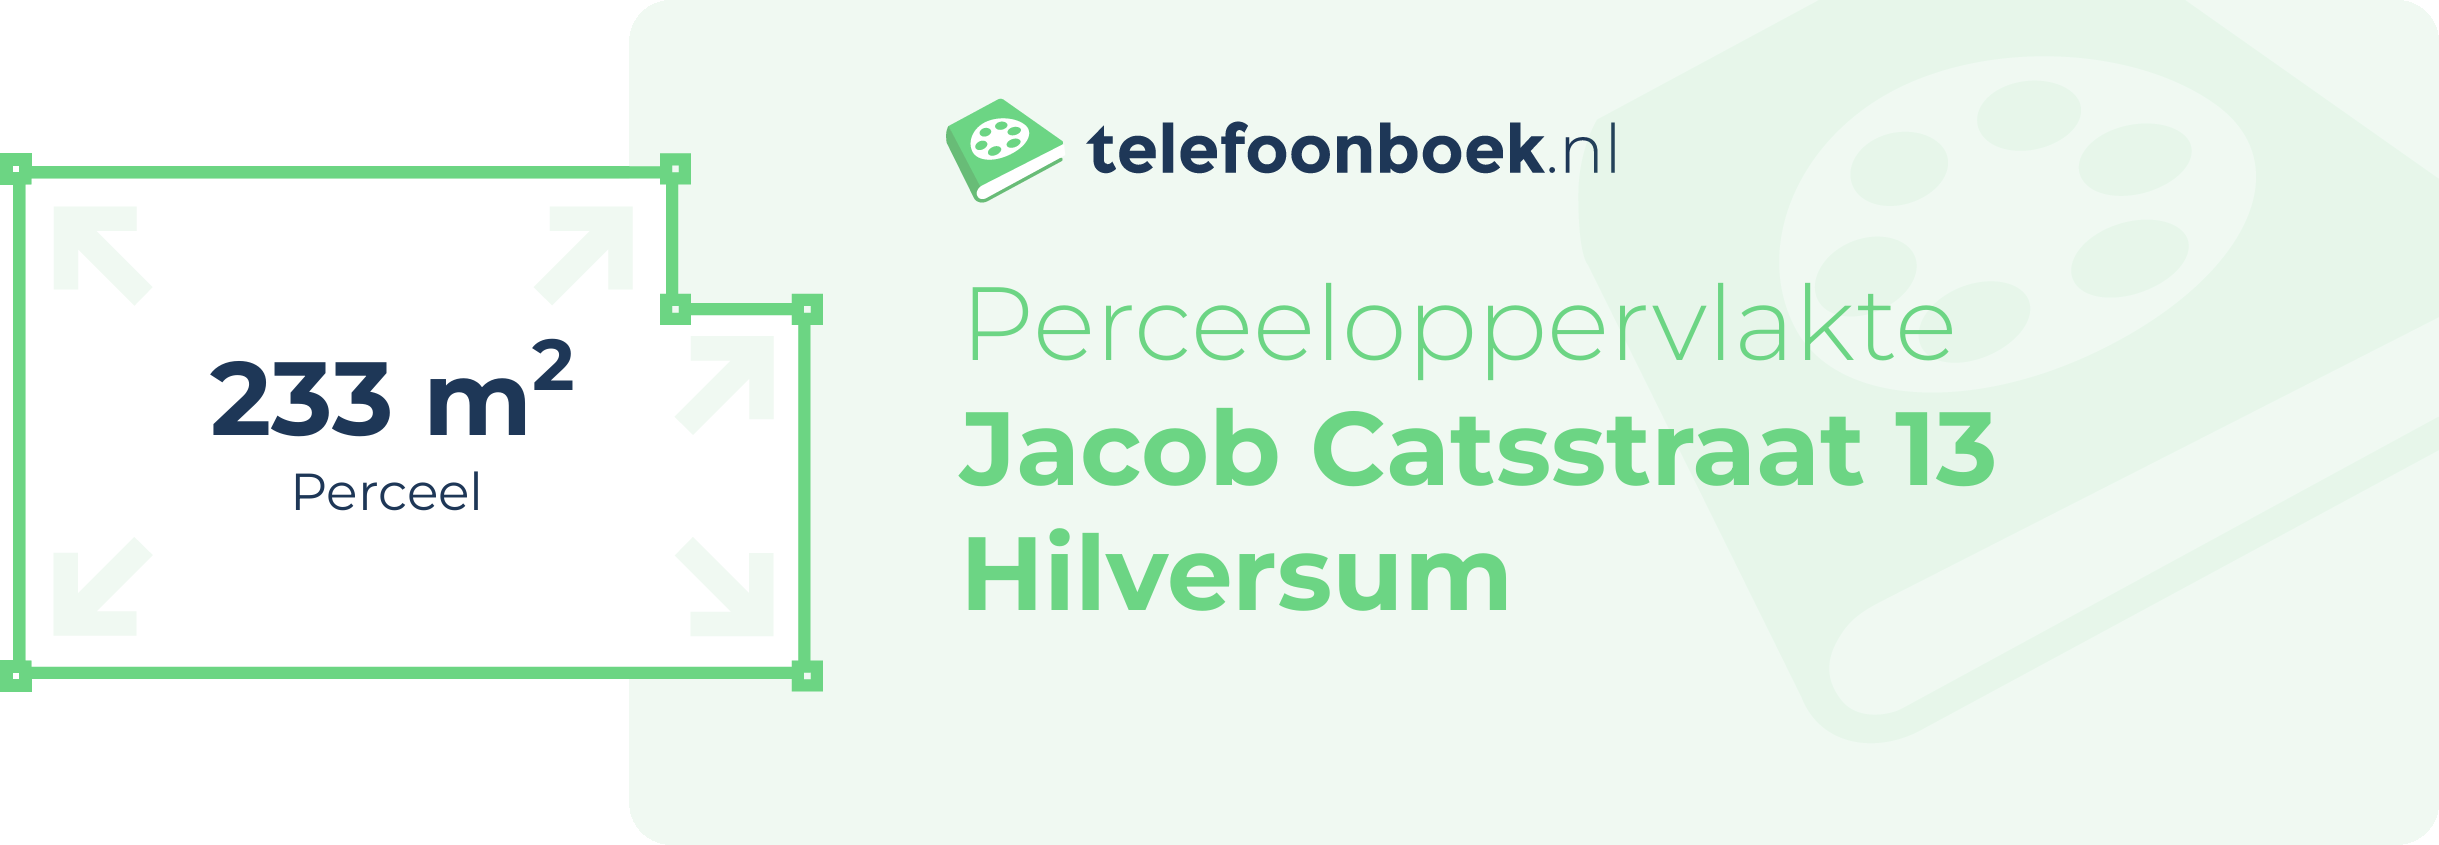 Perceeloppervlakte Jacob Catsstraat 13 Hilversum